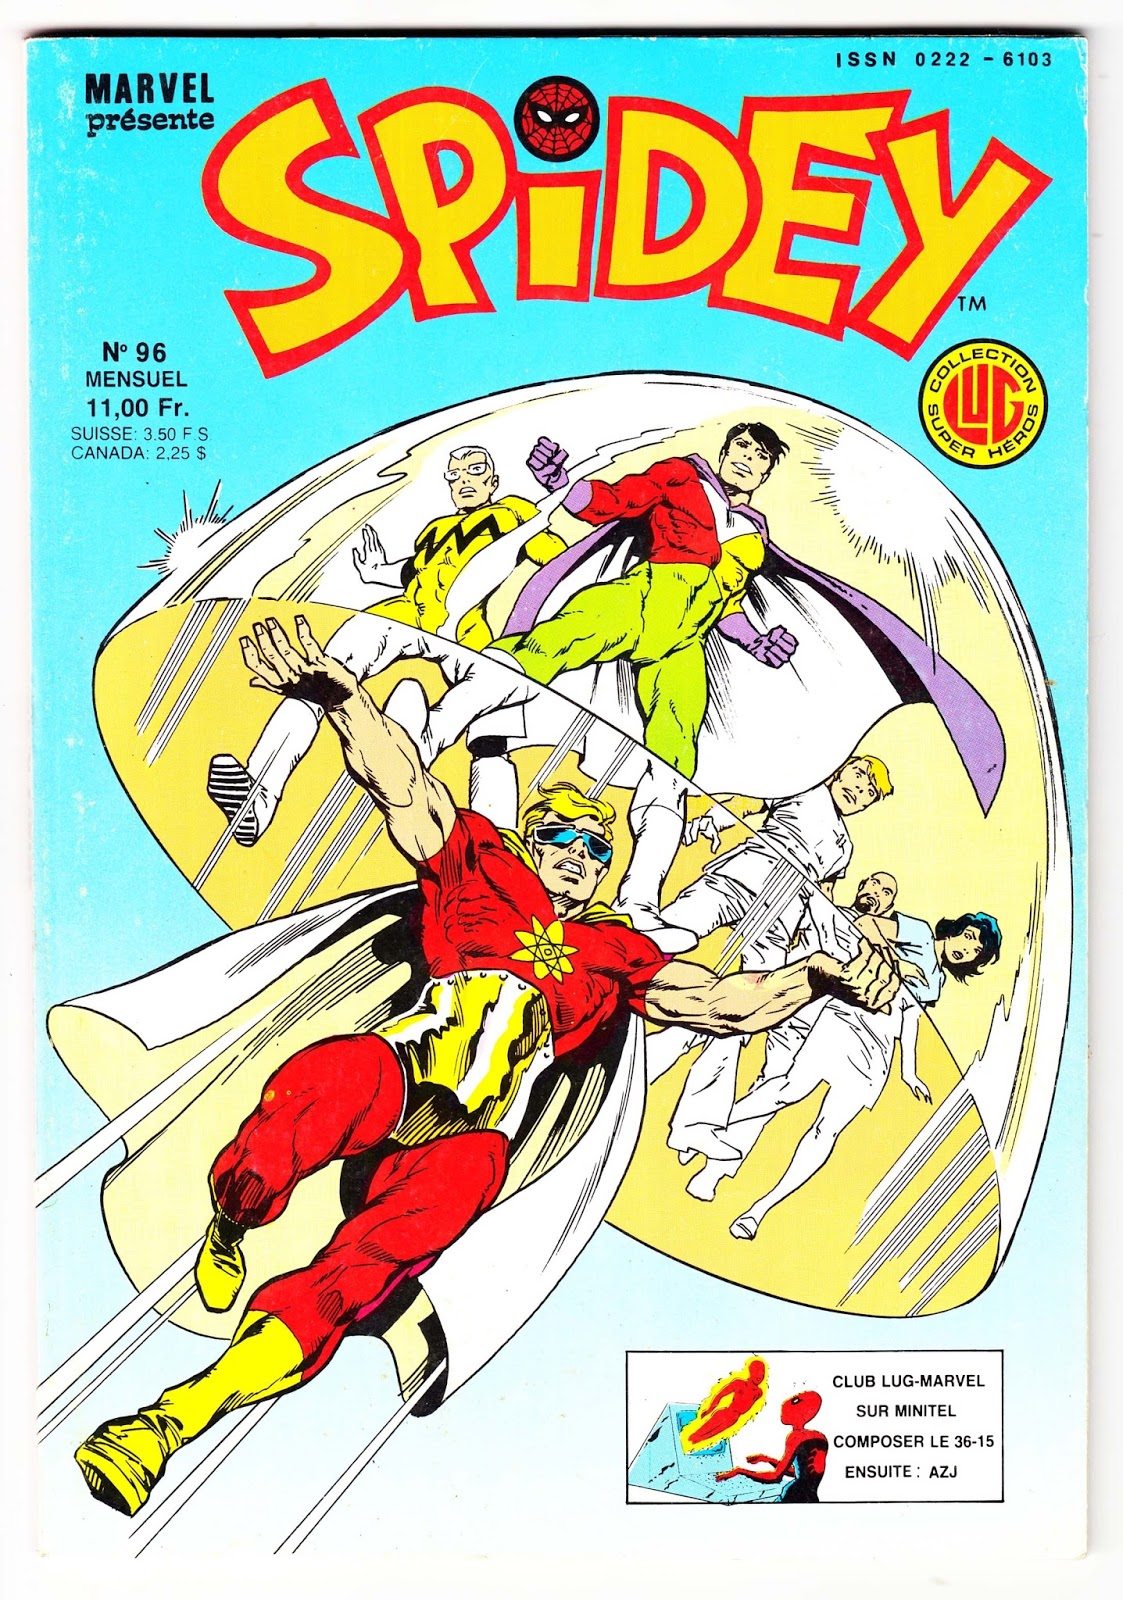 50 - Les comics que vous lisez en ce moment - Page 4 Spidey-n-96-comics-marvel